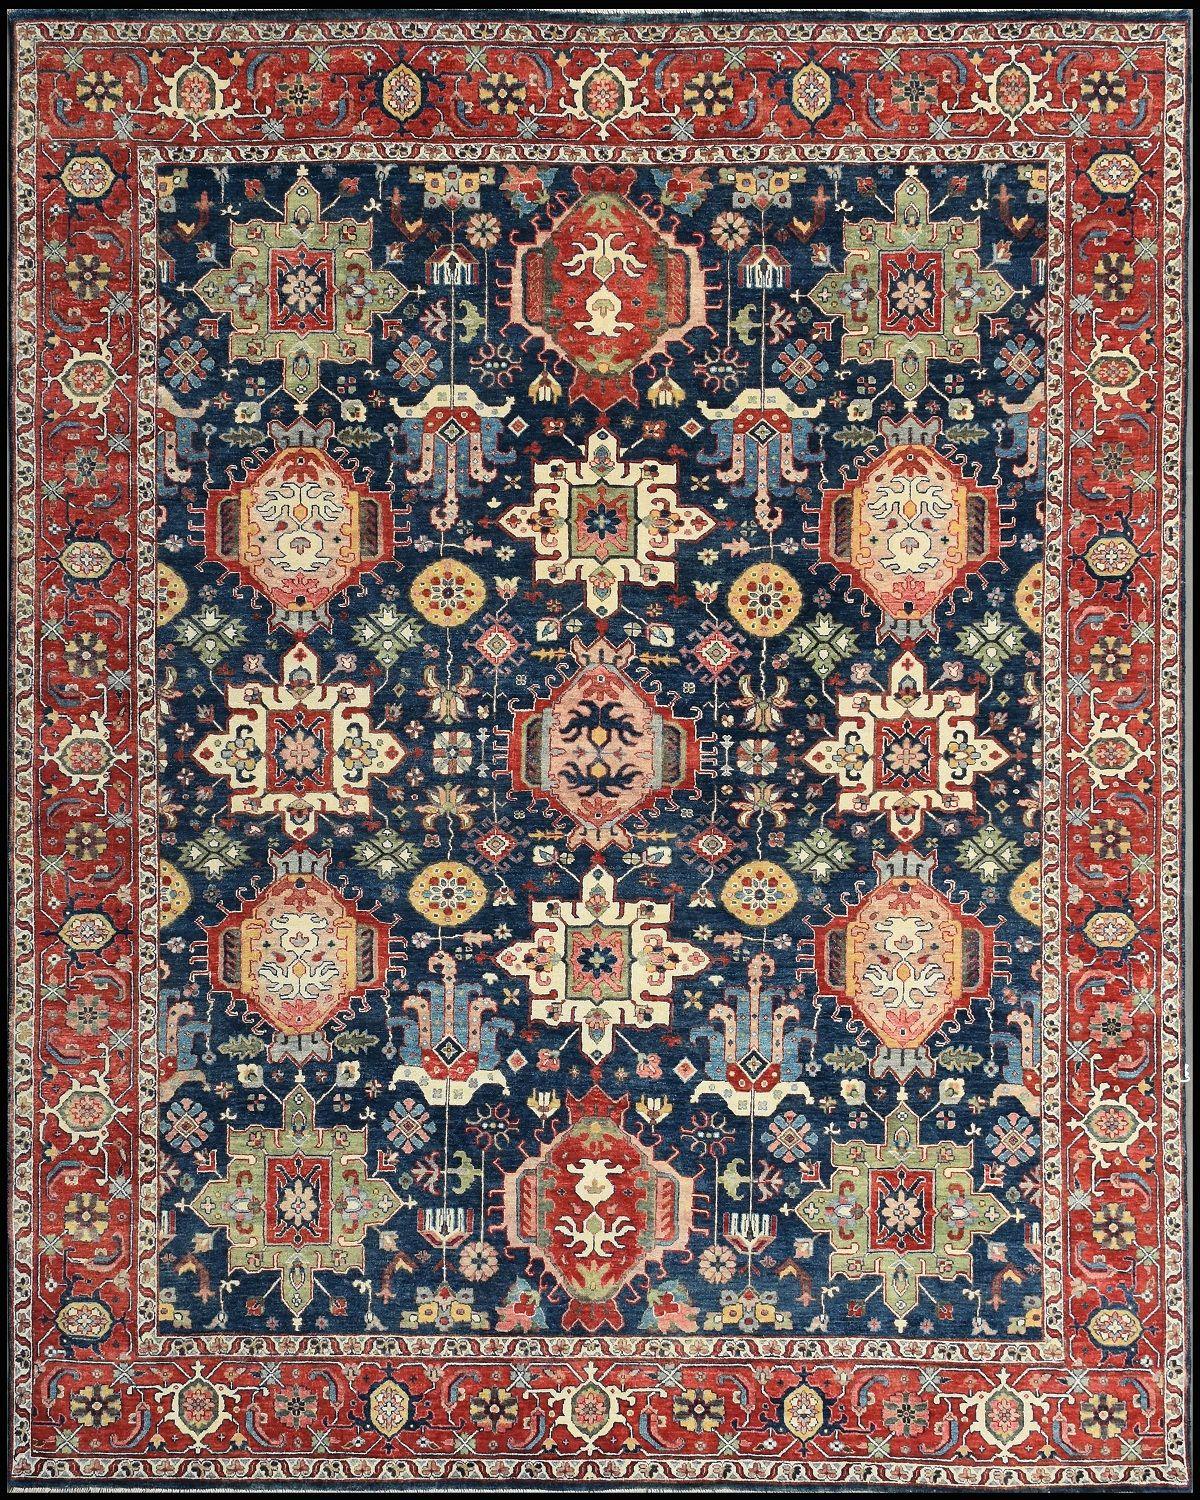 Joli tapis neuf avec un beau design persan et de belles couleurs, entièrement noué à la main avec de la laine et du velours de soie sur une base de coton.